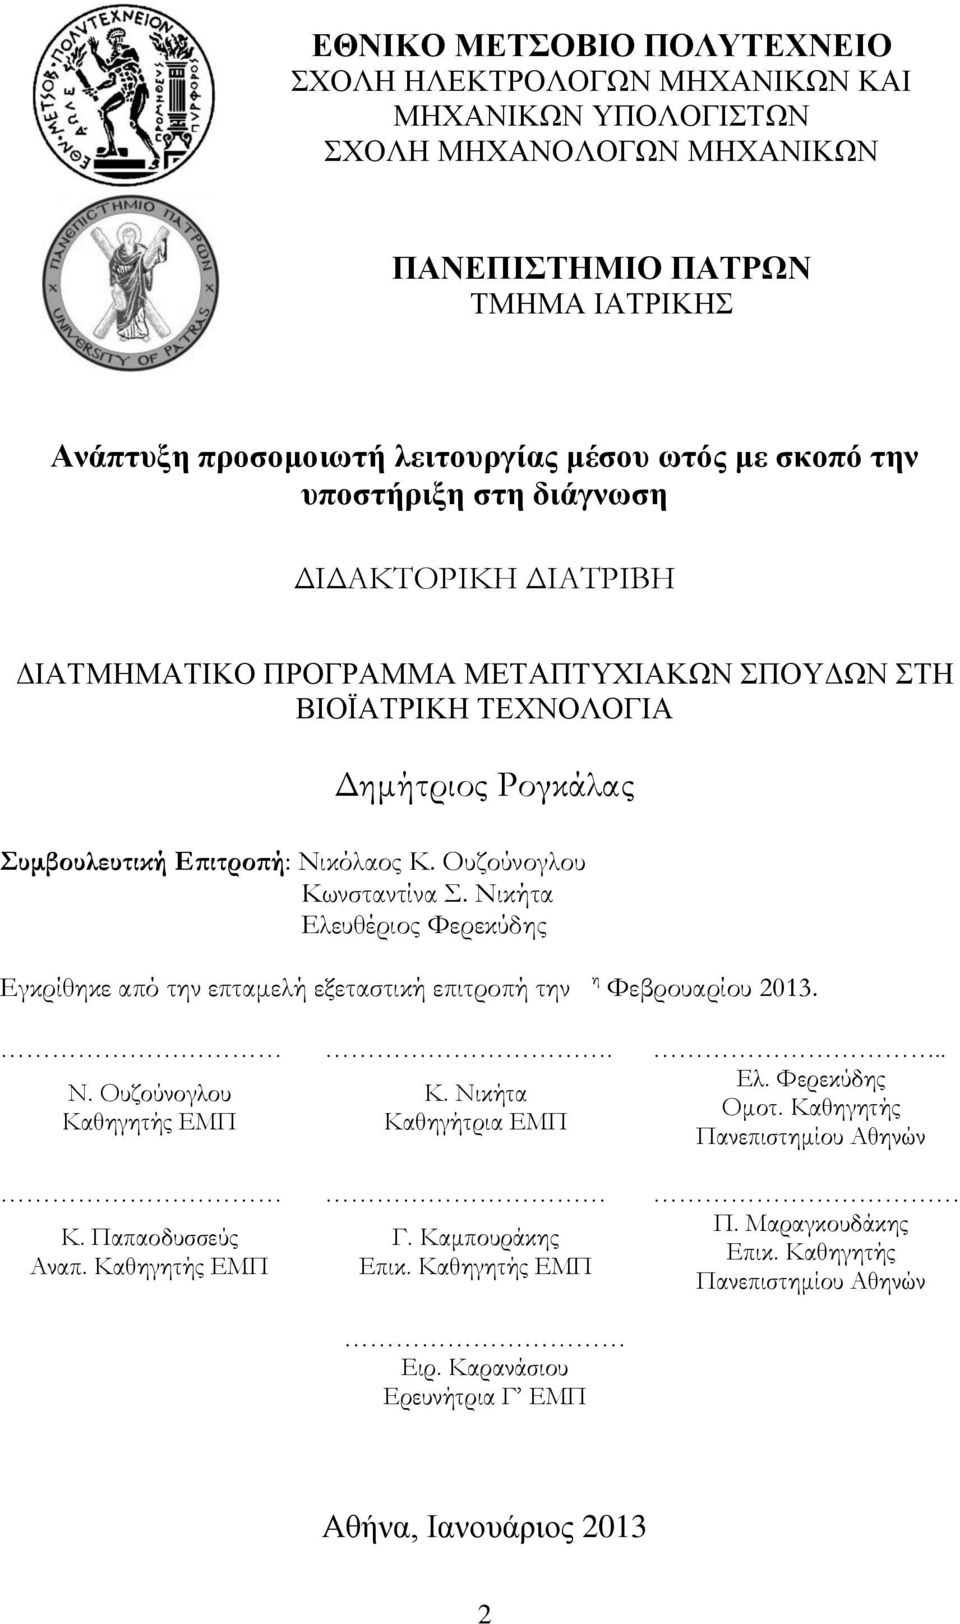 Ουζούνογλου Κωνσταντίνα Σ. Νικήτα Ελευθέριος Φερεκύδης Εγκρίθηκε από την επταμελή εξεταστική επιτροπή την η Φεβρουαρίου 2013.... Ελ. Φερεκύδης Ν. Ουζούνογλου Κ. Νικήτα Ομοτ.